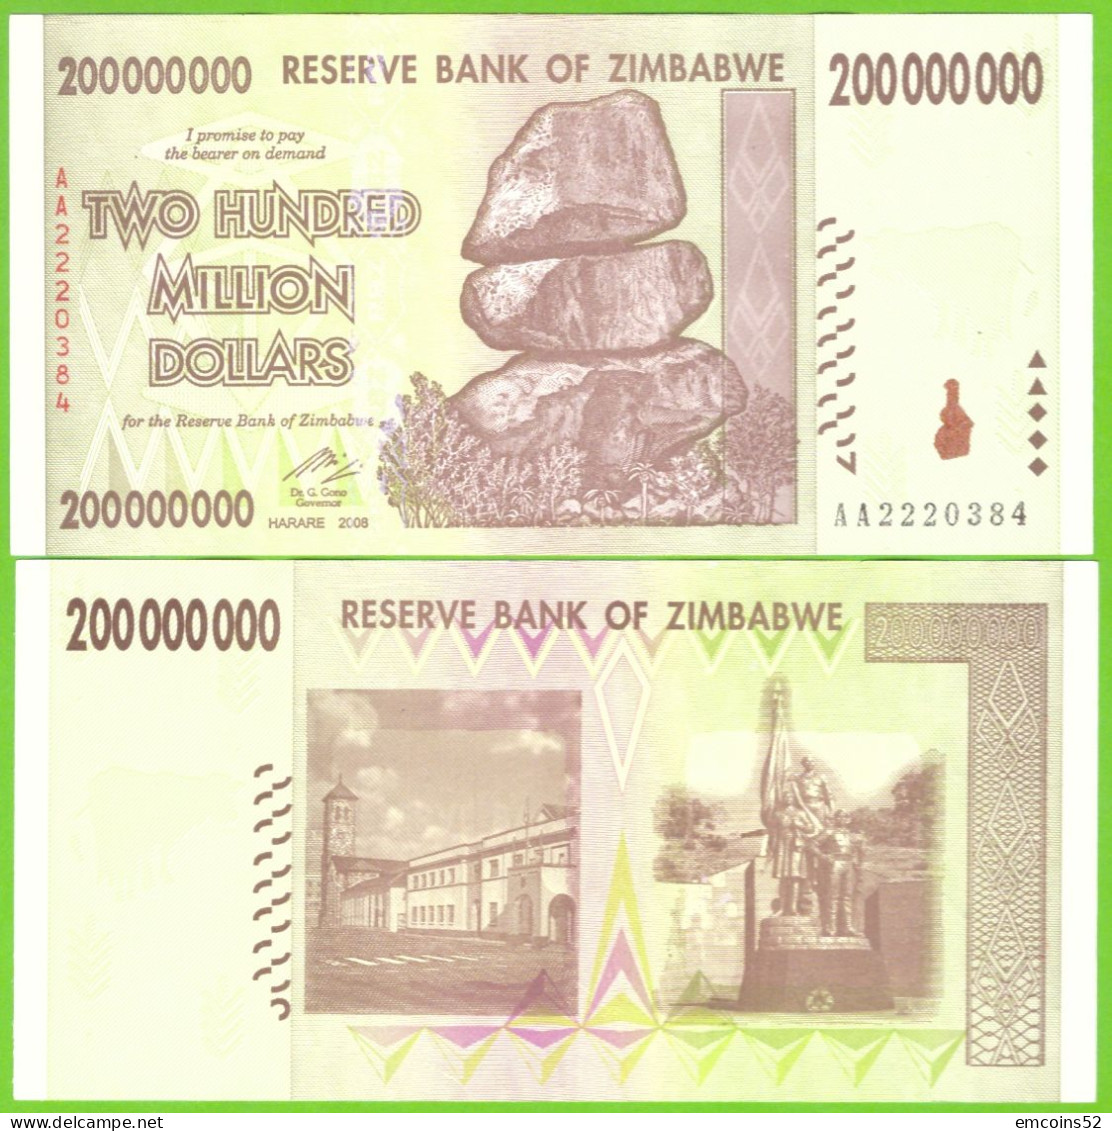 ZIMBABWE 200000000 DOLLARS 2008  P-81 UNC - Zimbabwe